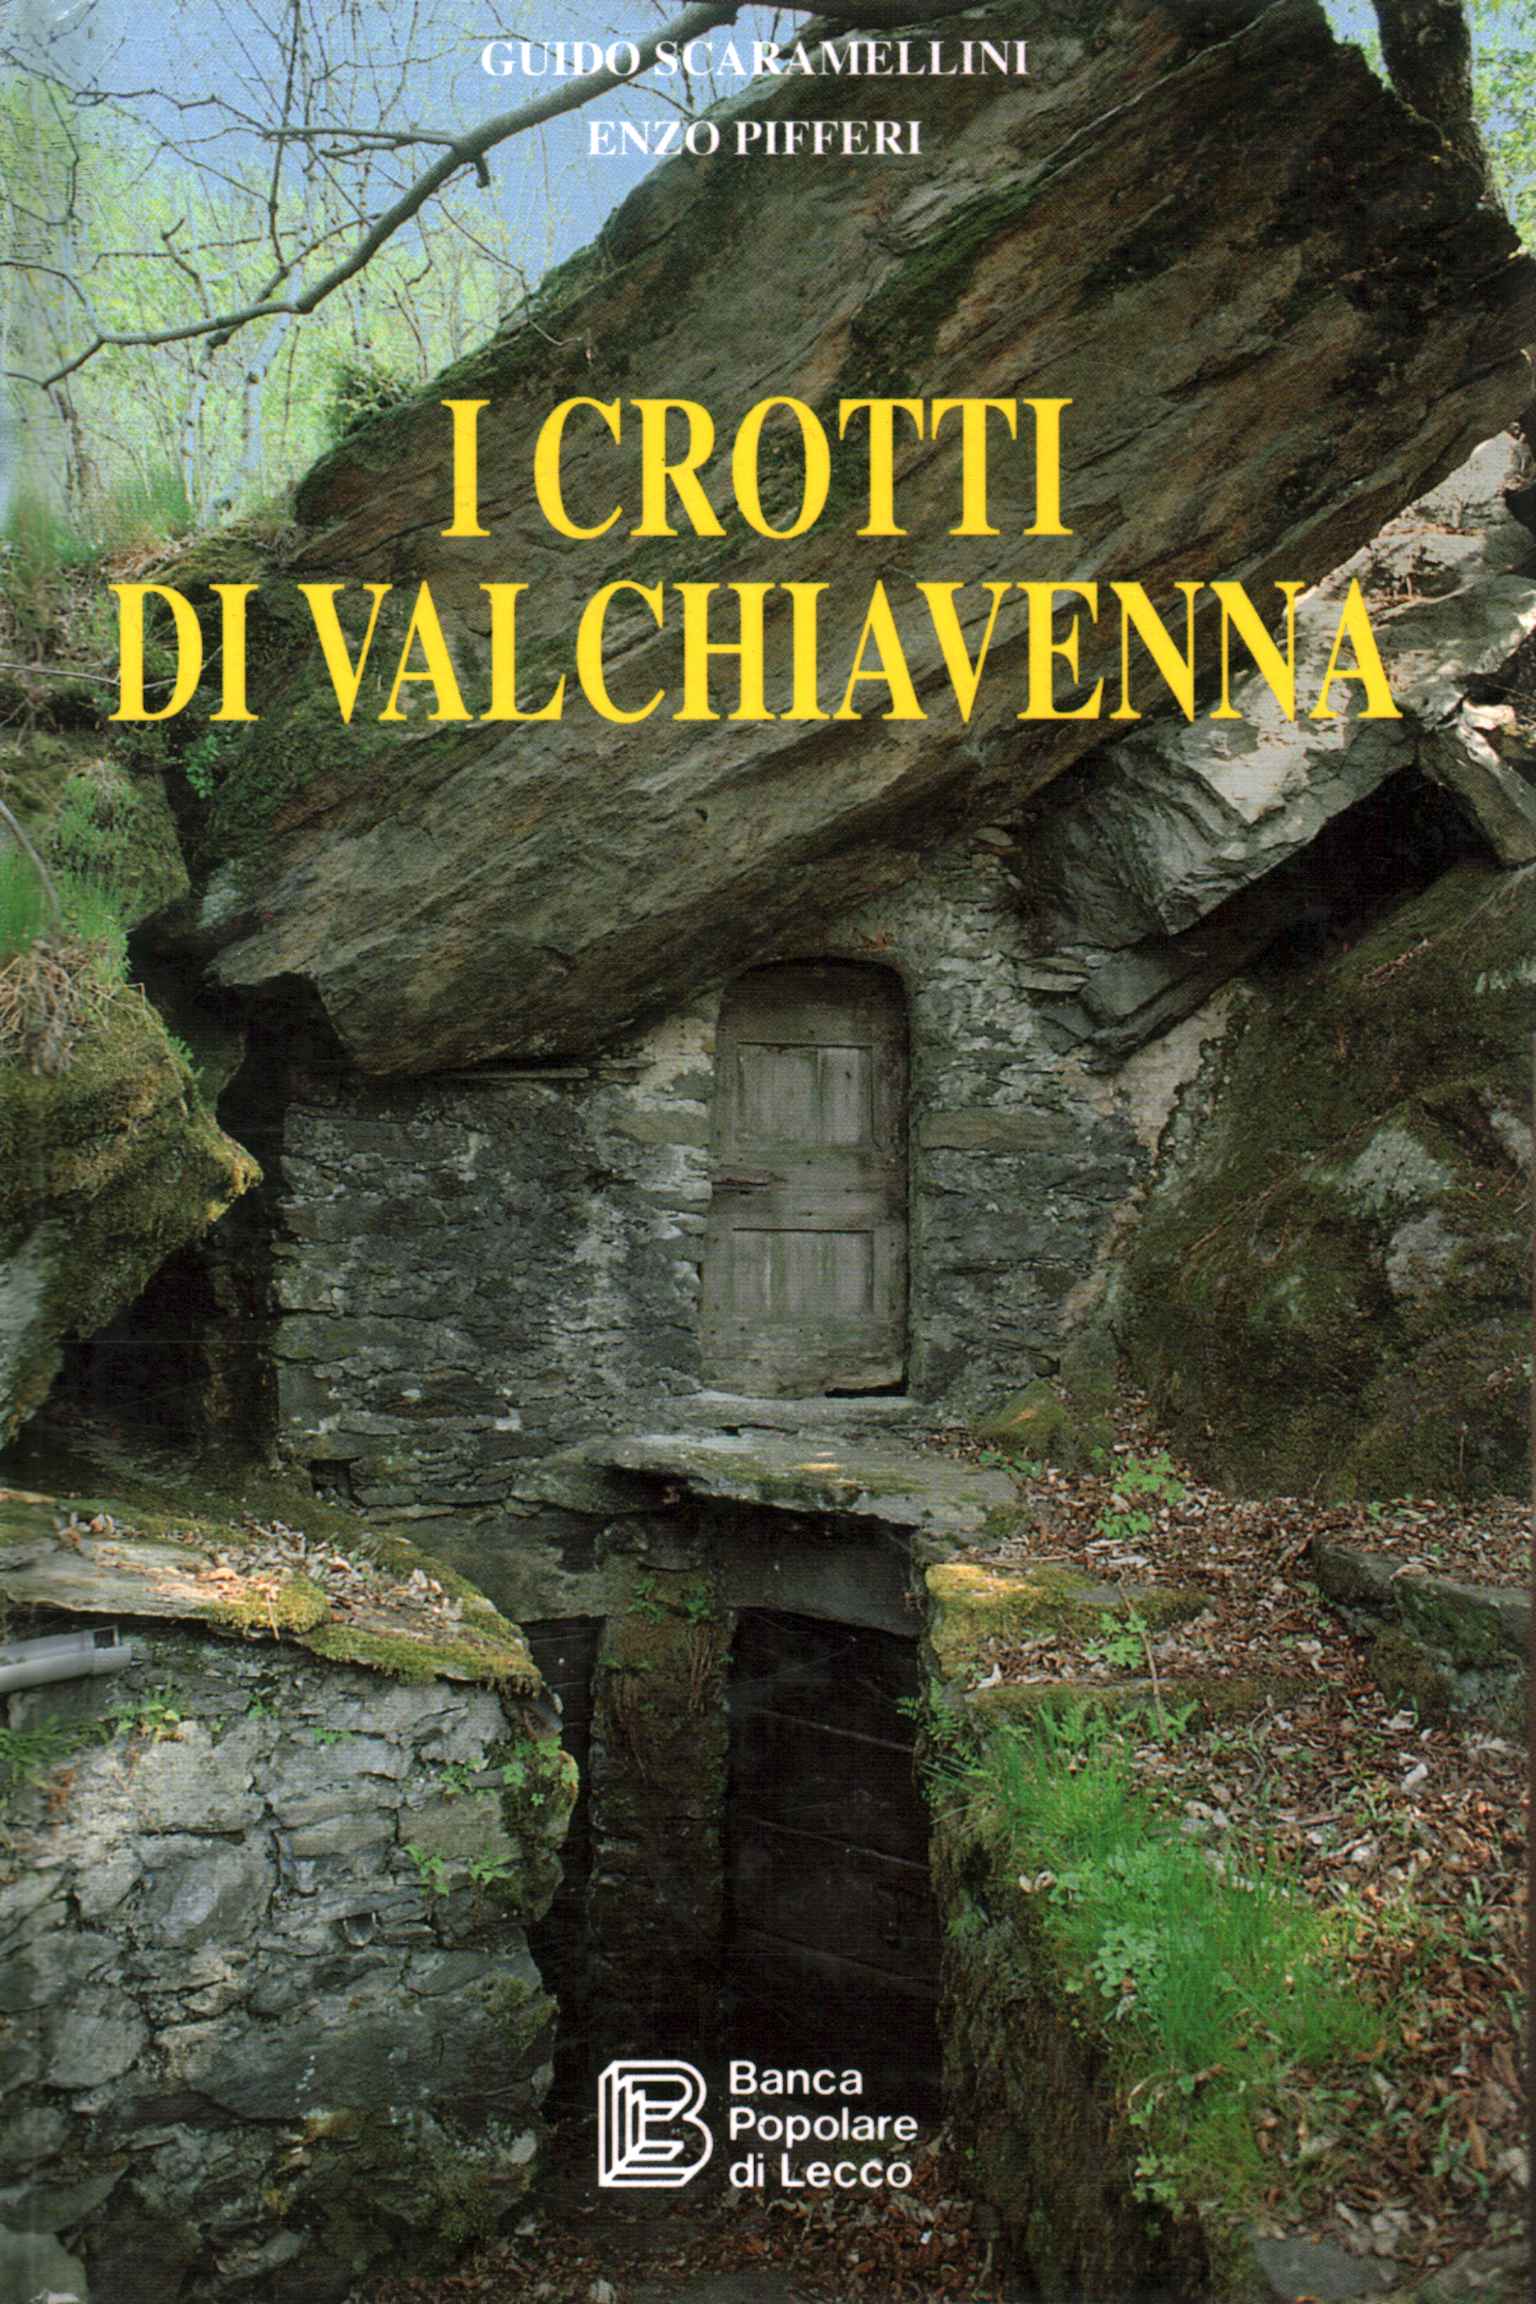 Die Crotti von Valchiavenna